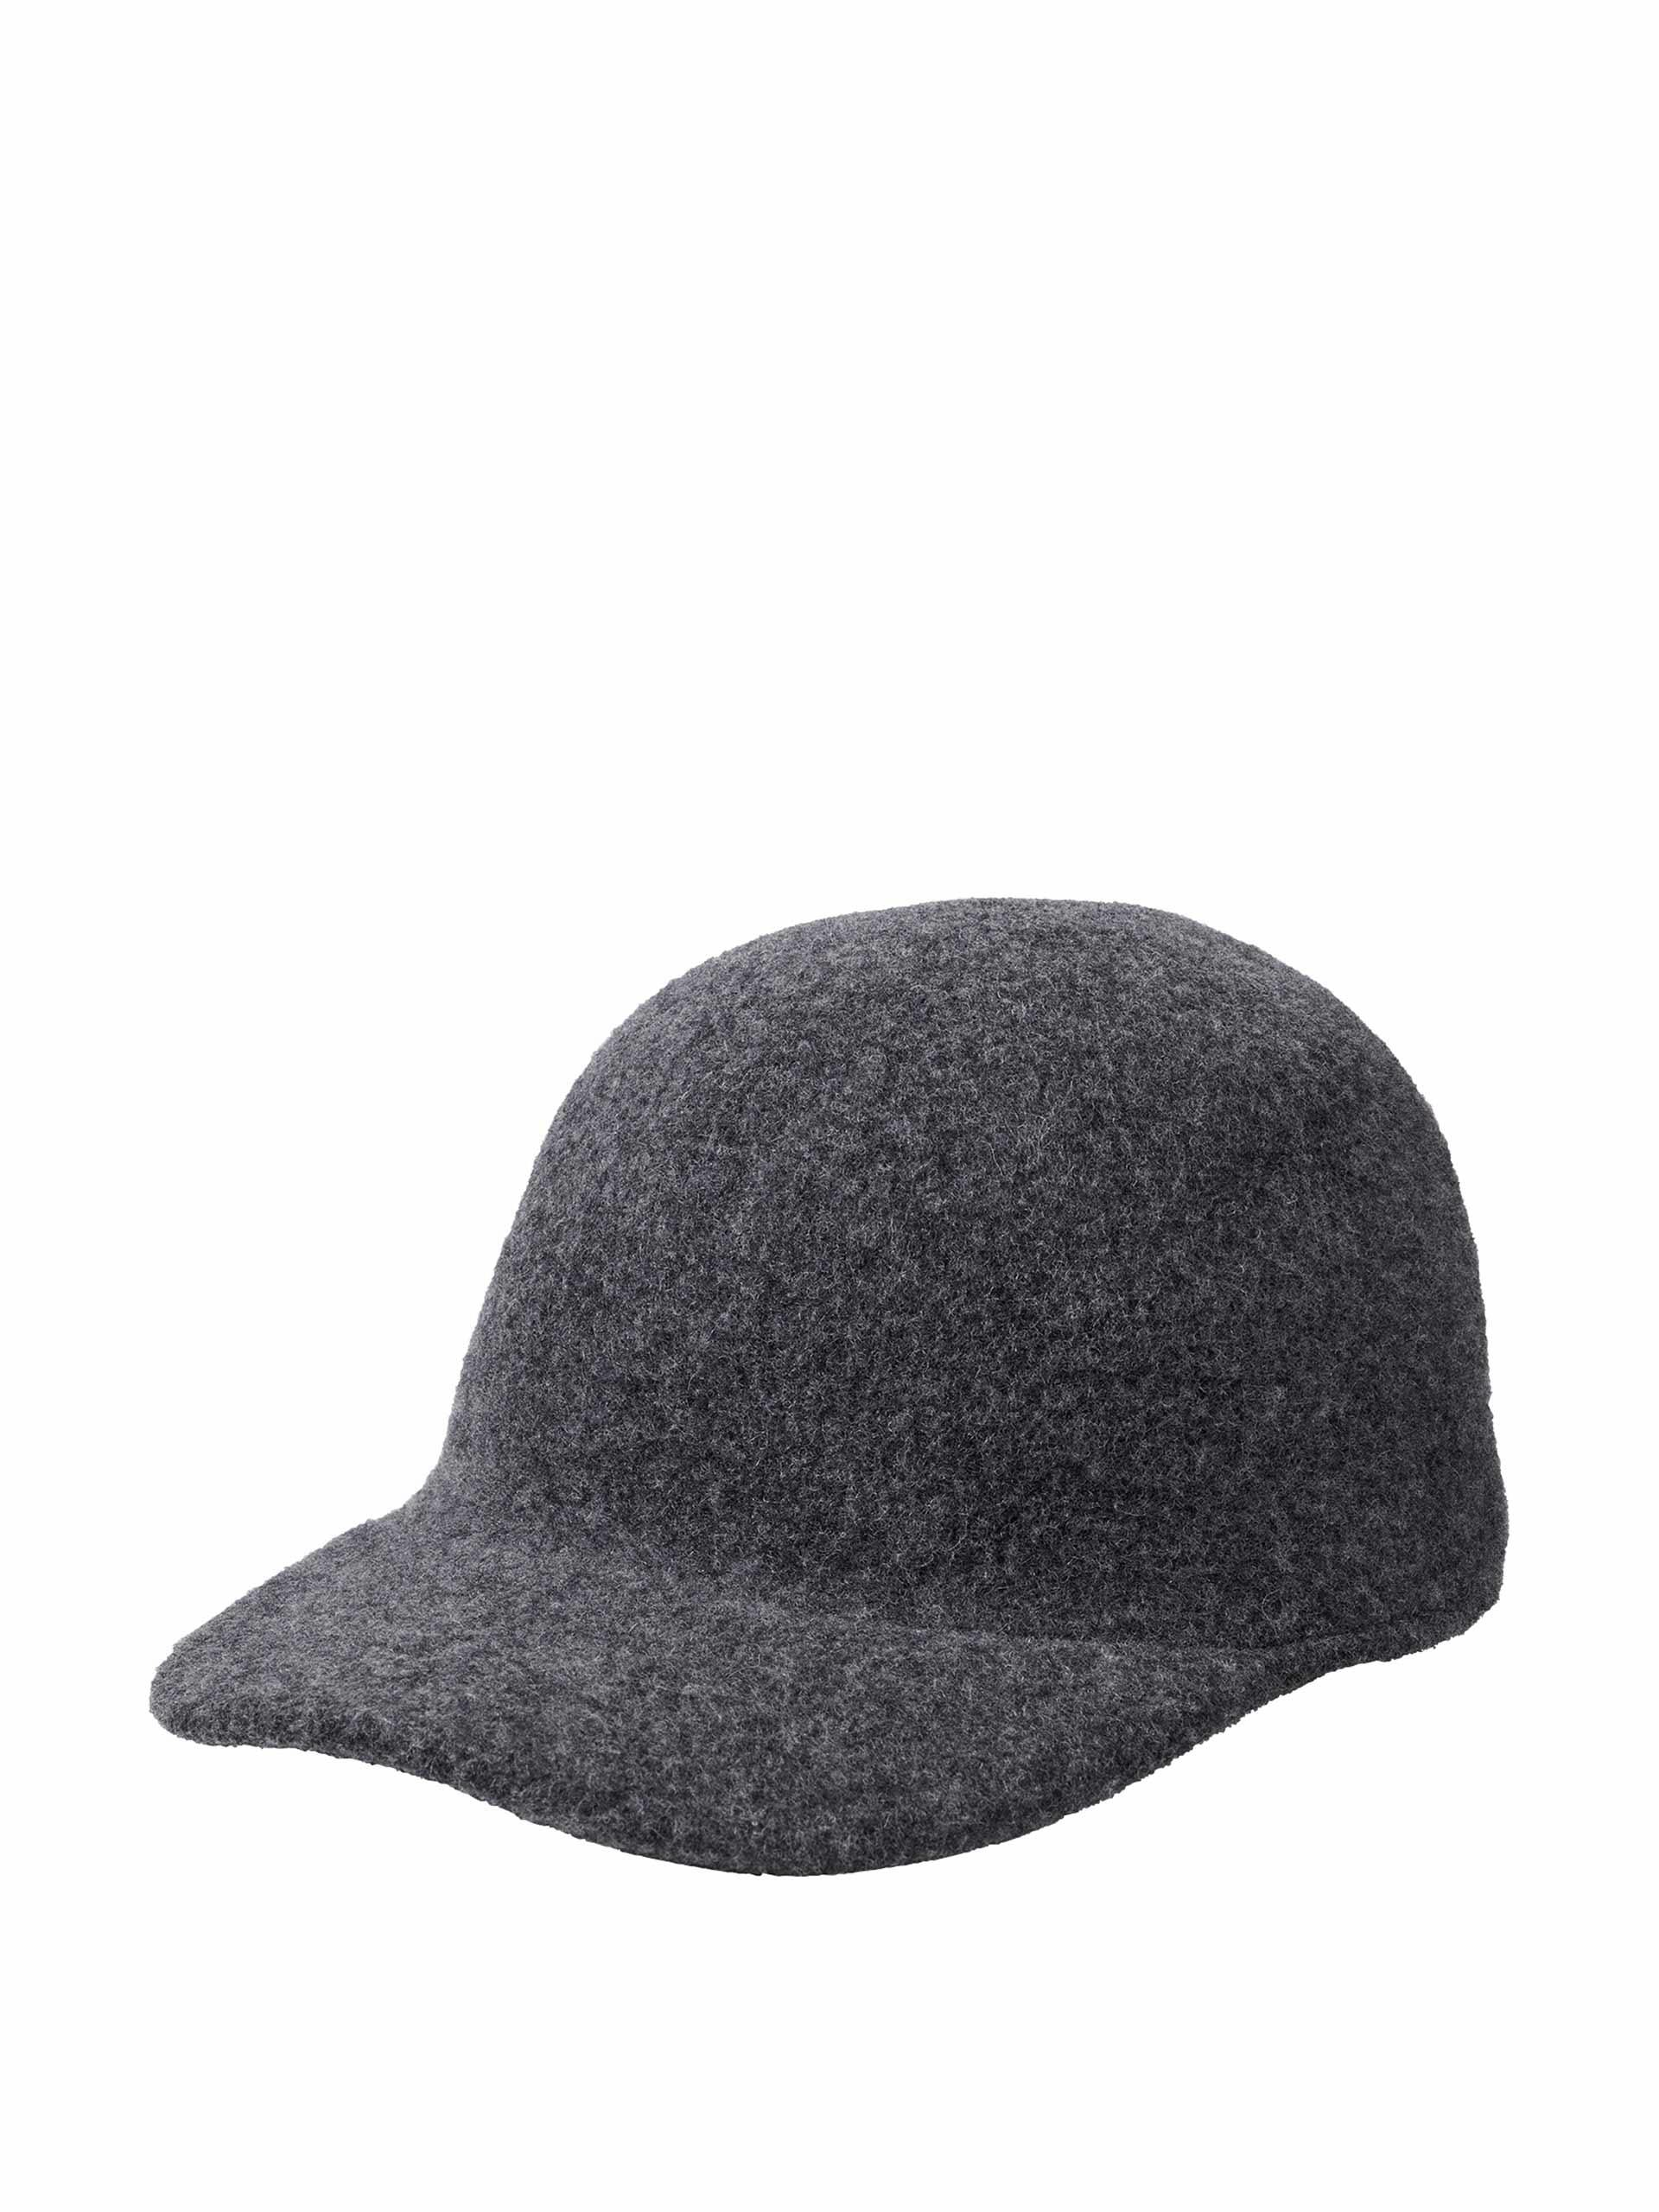 Grey adjustable wool cap